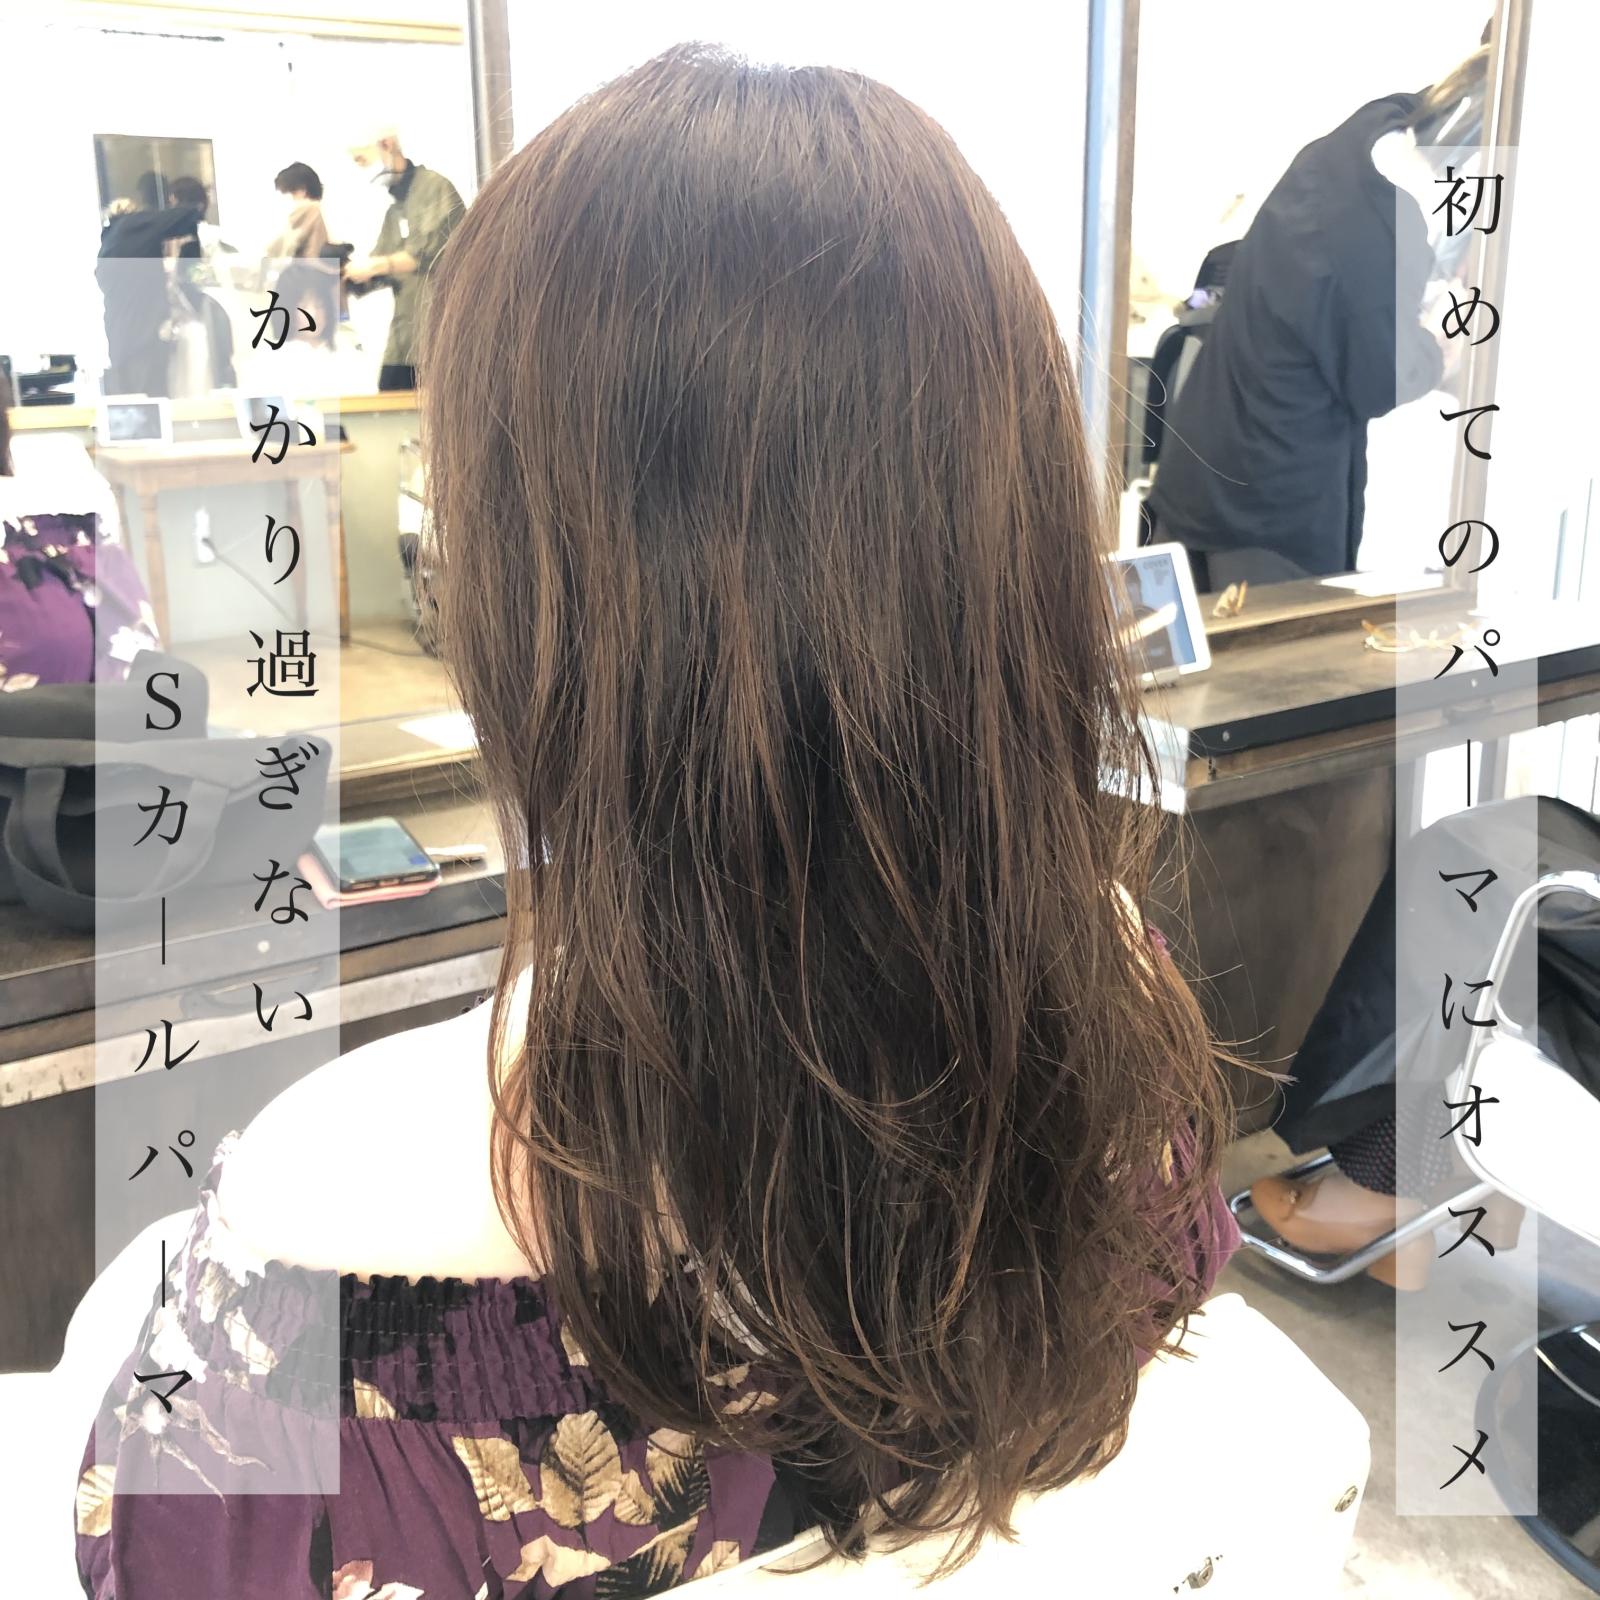 初めての方にオススメの毛先パーマ Staff Blog Magnolia マグノリア 東京 表参道にあるパーマが得意なヘアサロン